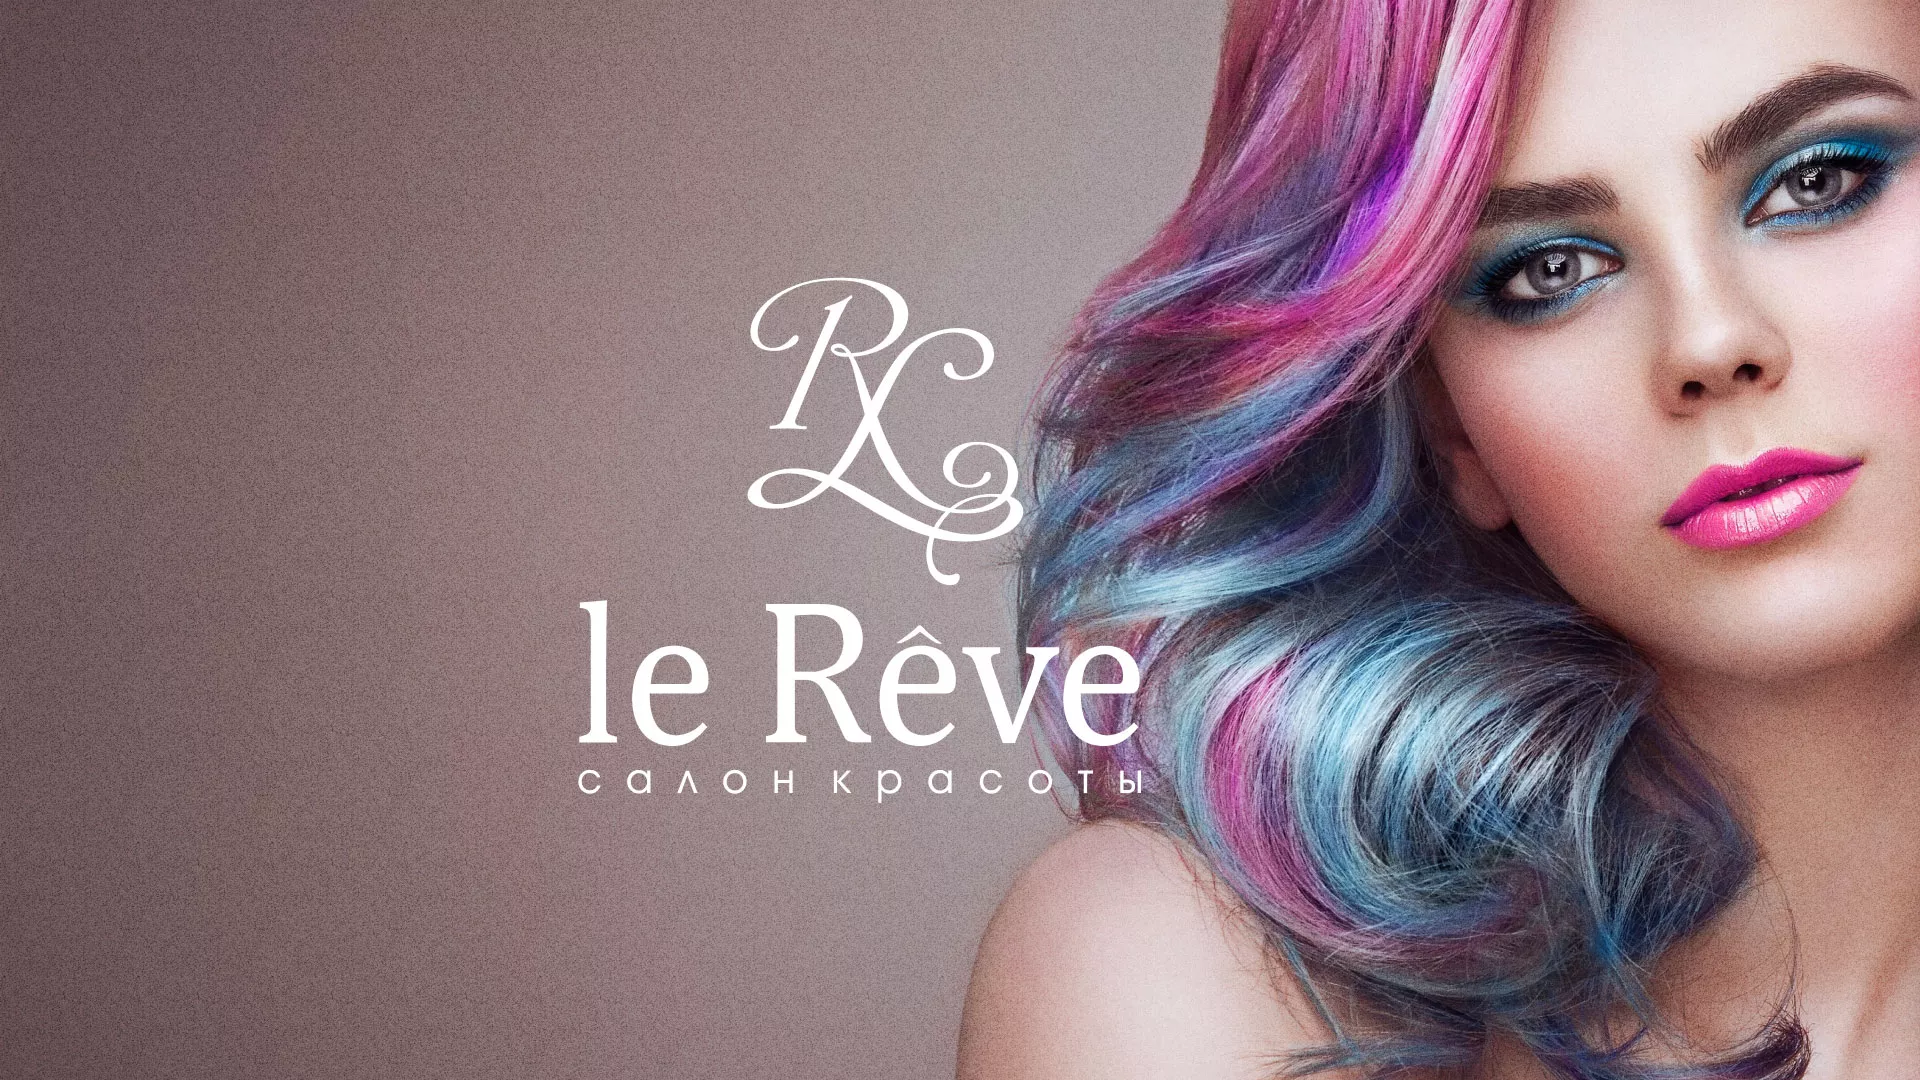 Создание сайта для салона красоты «Le Reve» в Туле